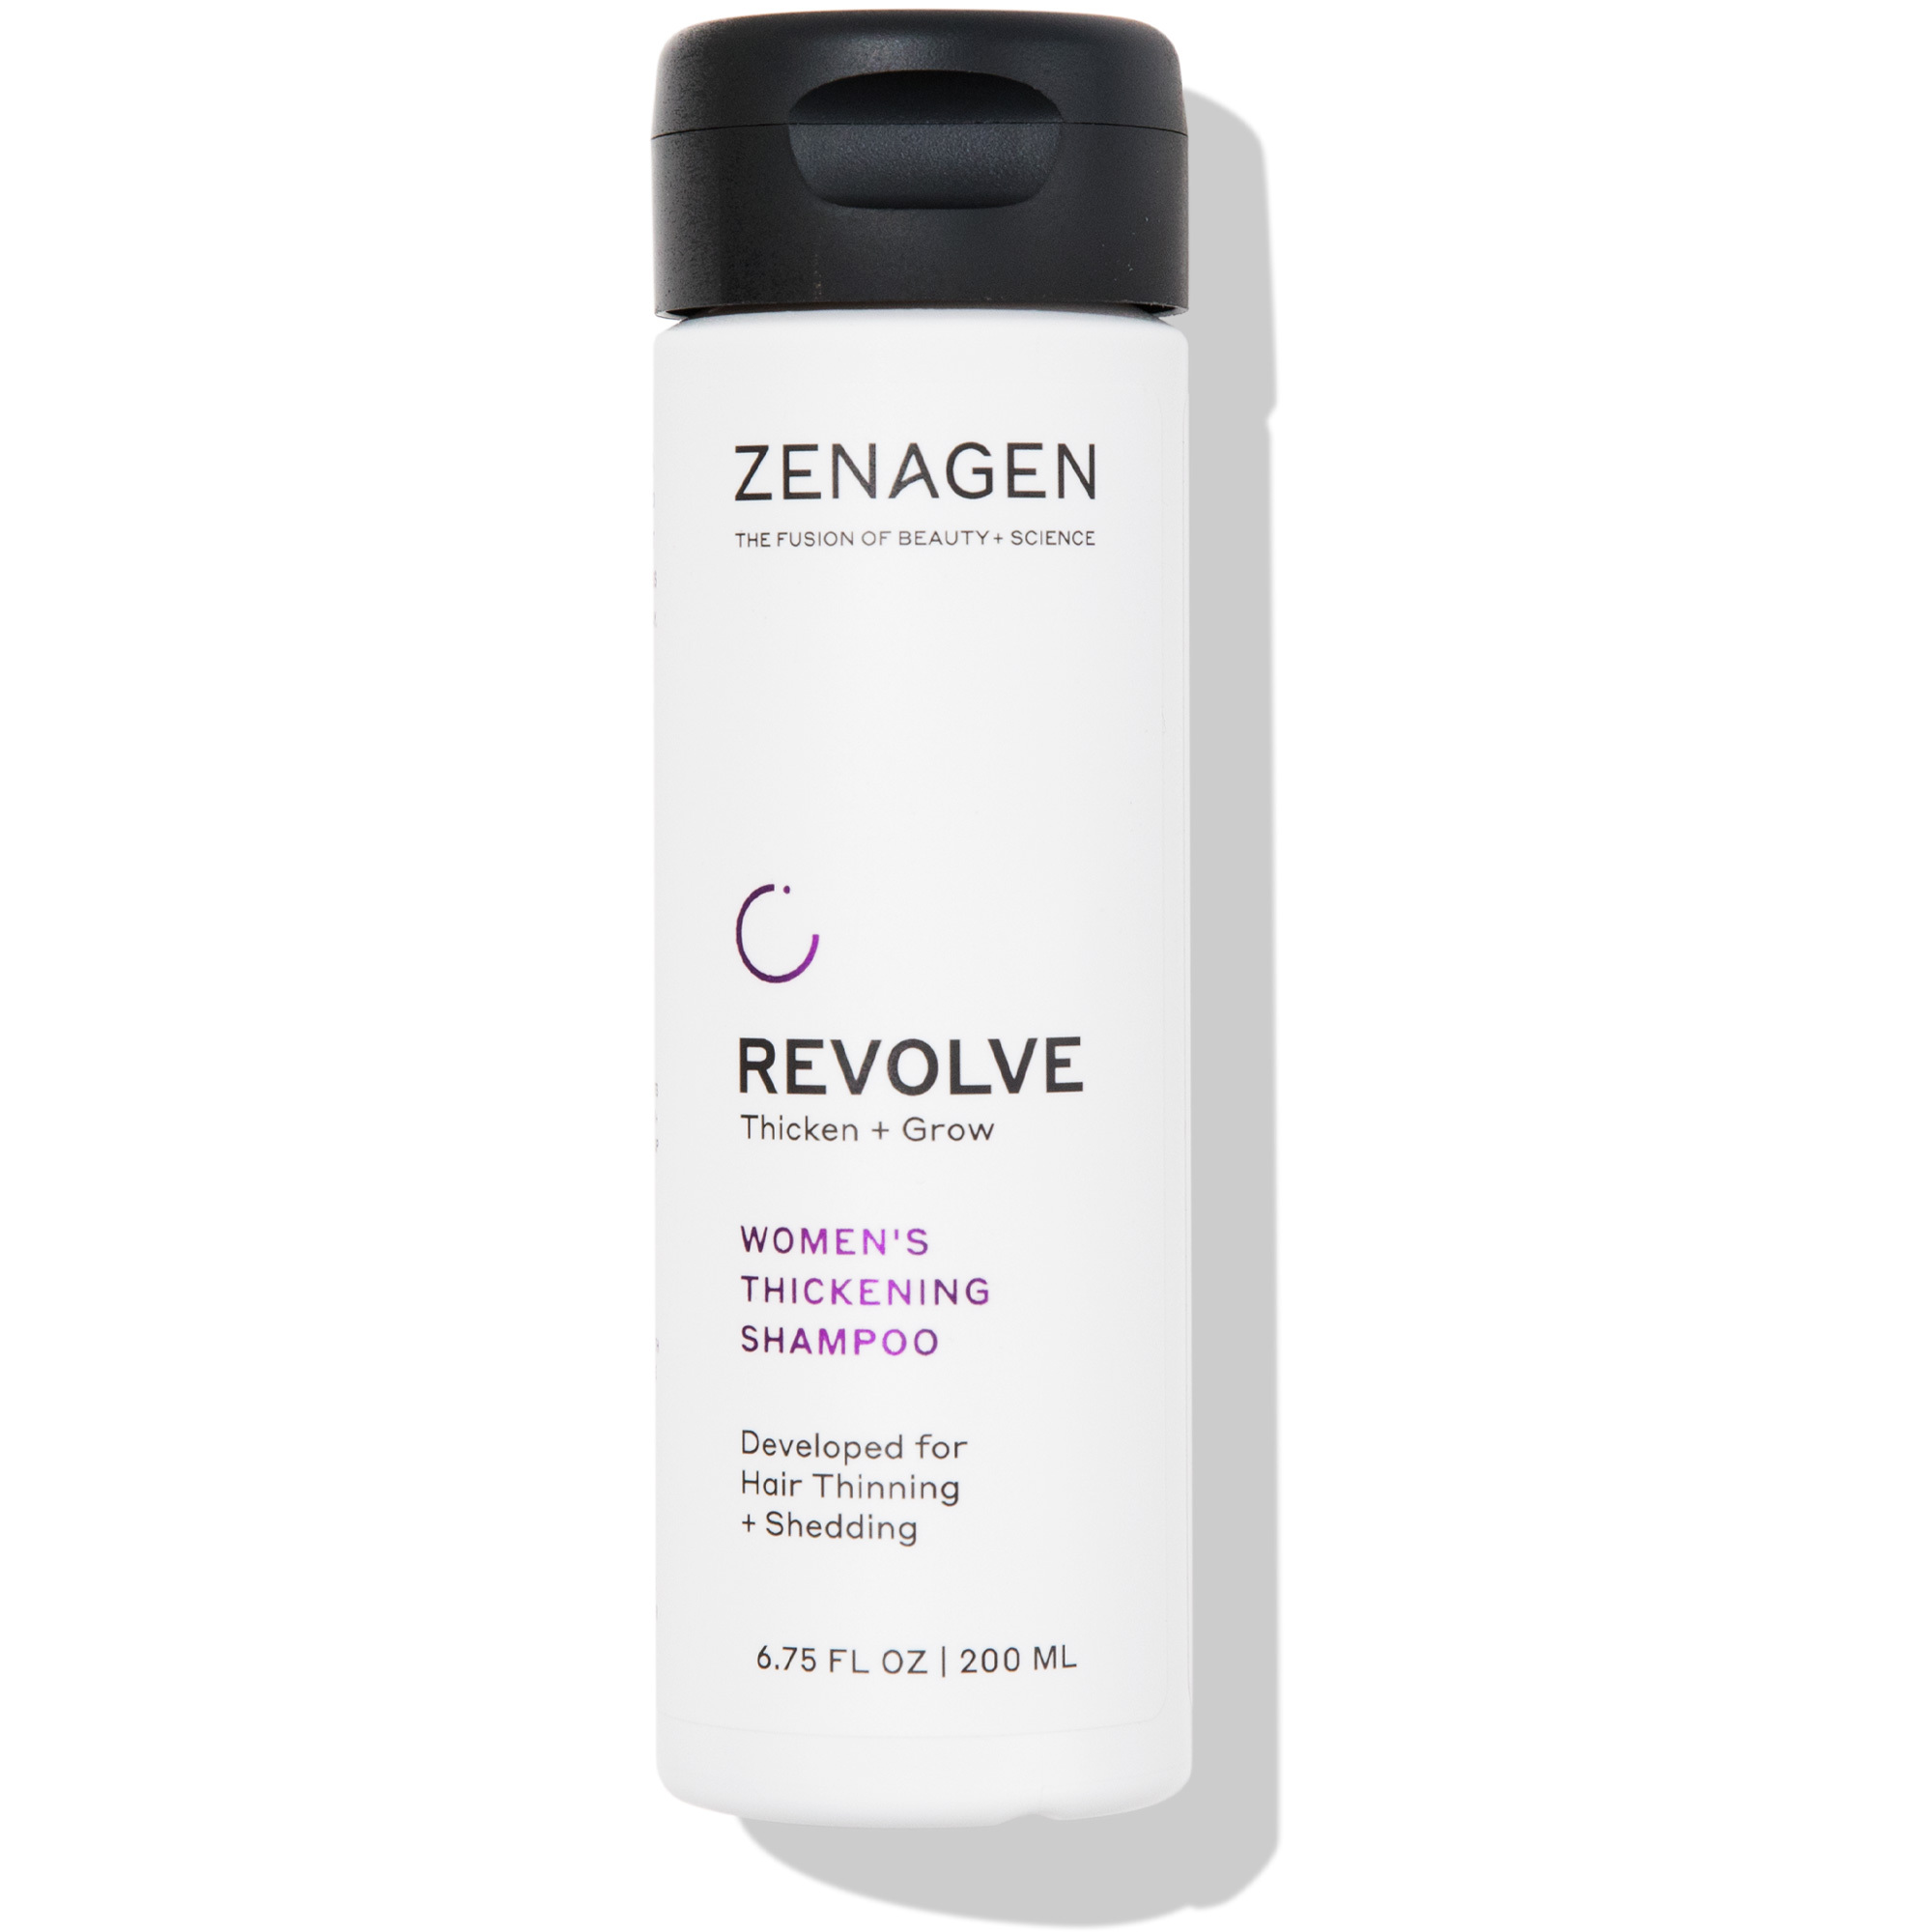 Zenagen Revolve Thicken + Grow Thickening Shampoo - Women